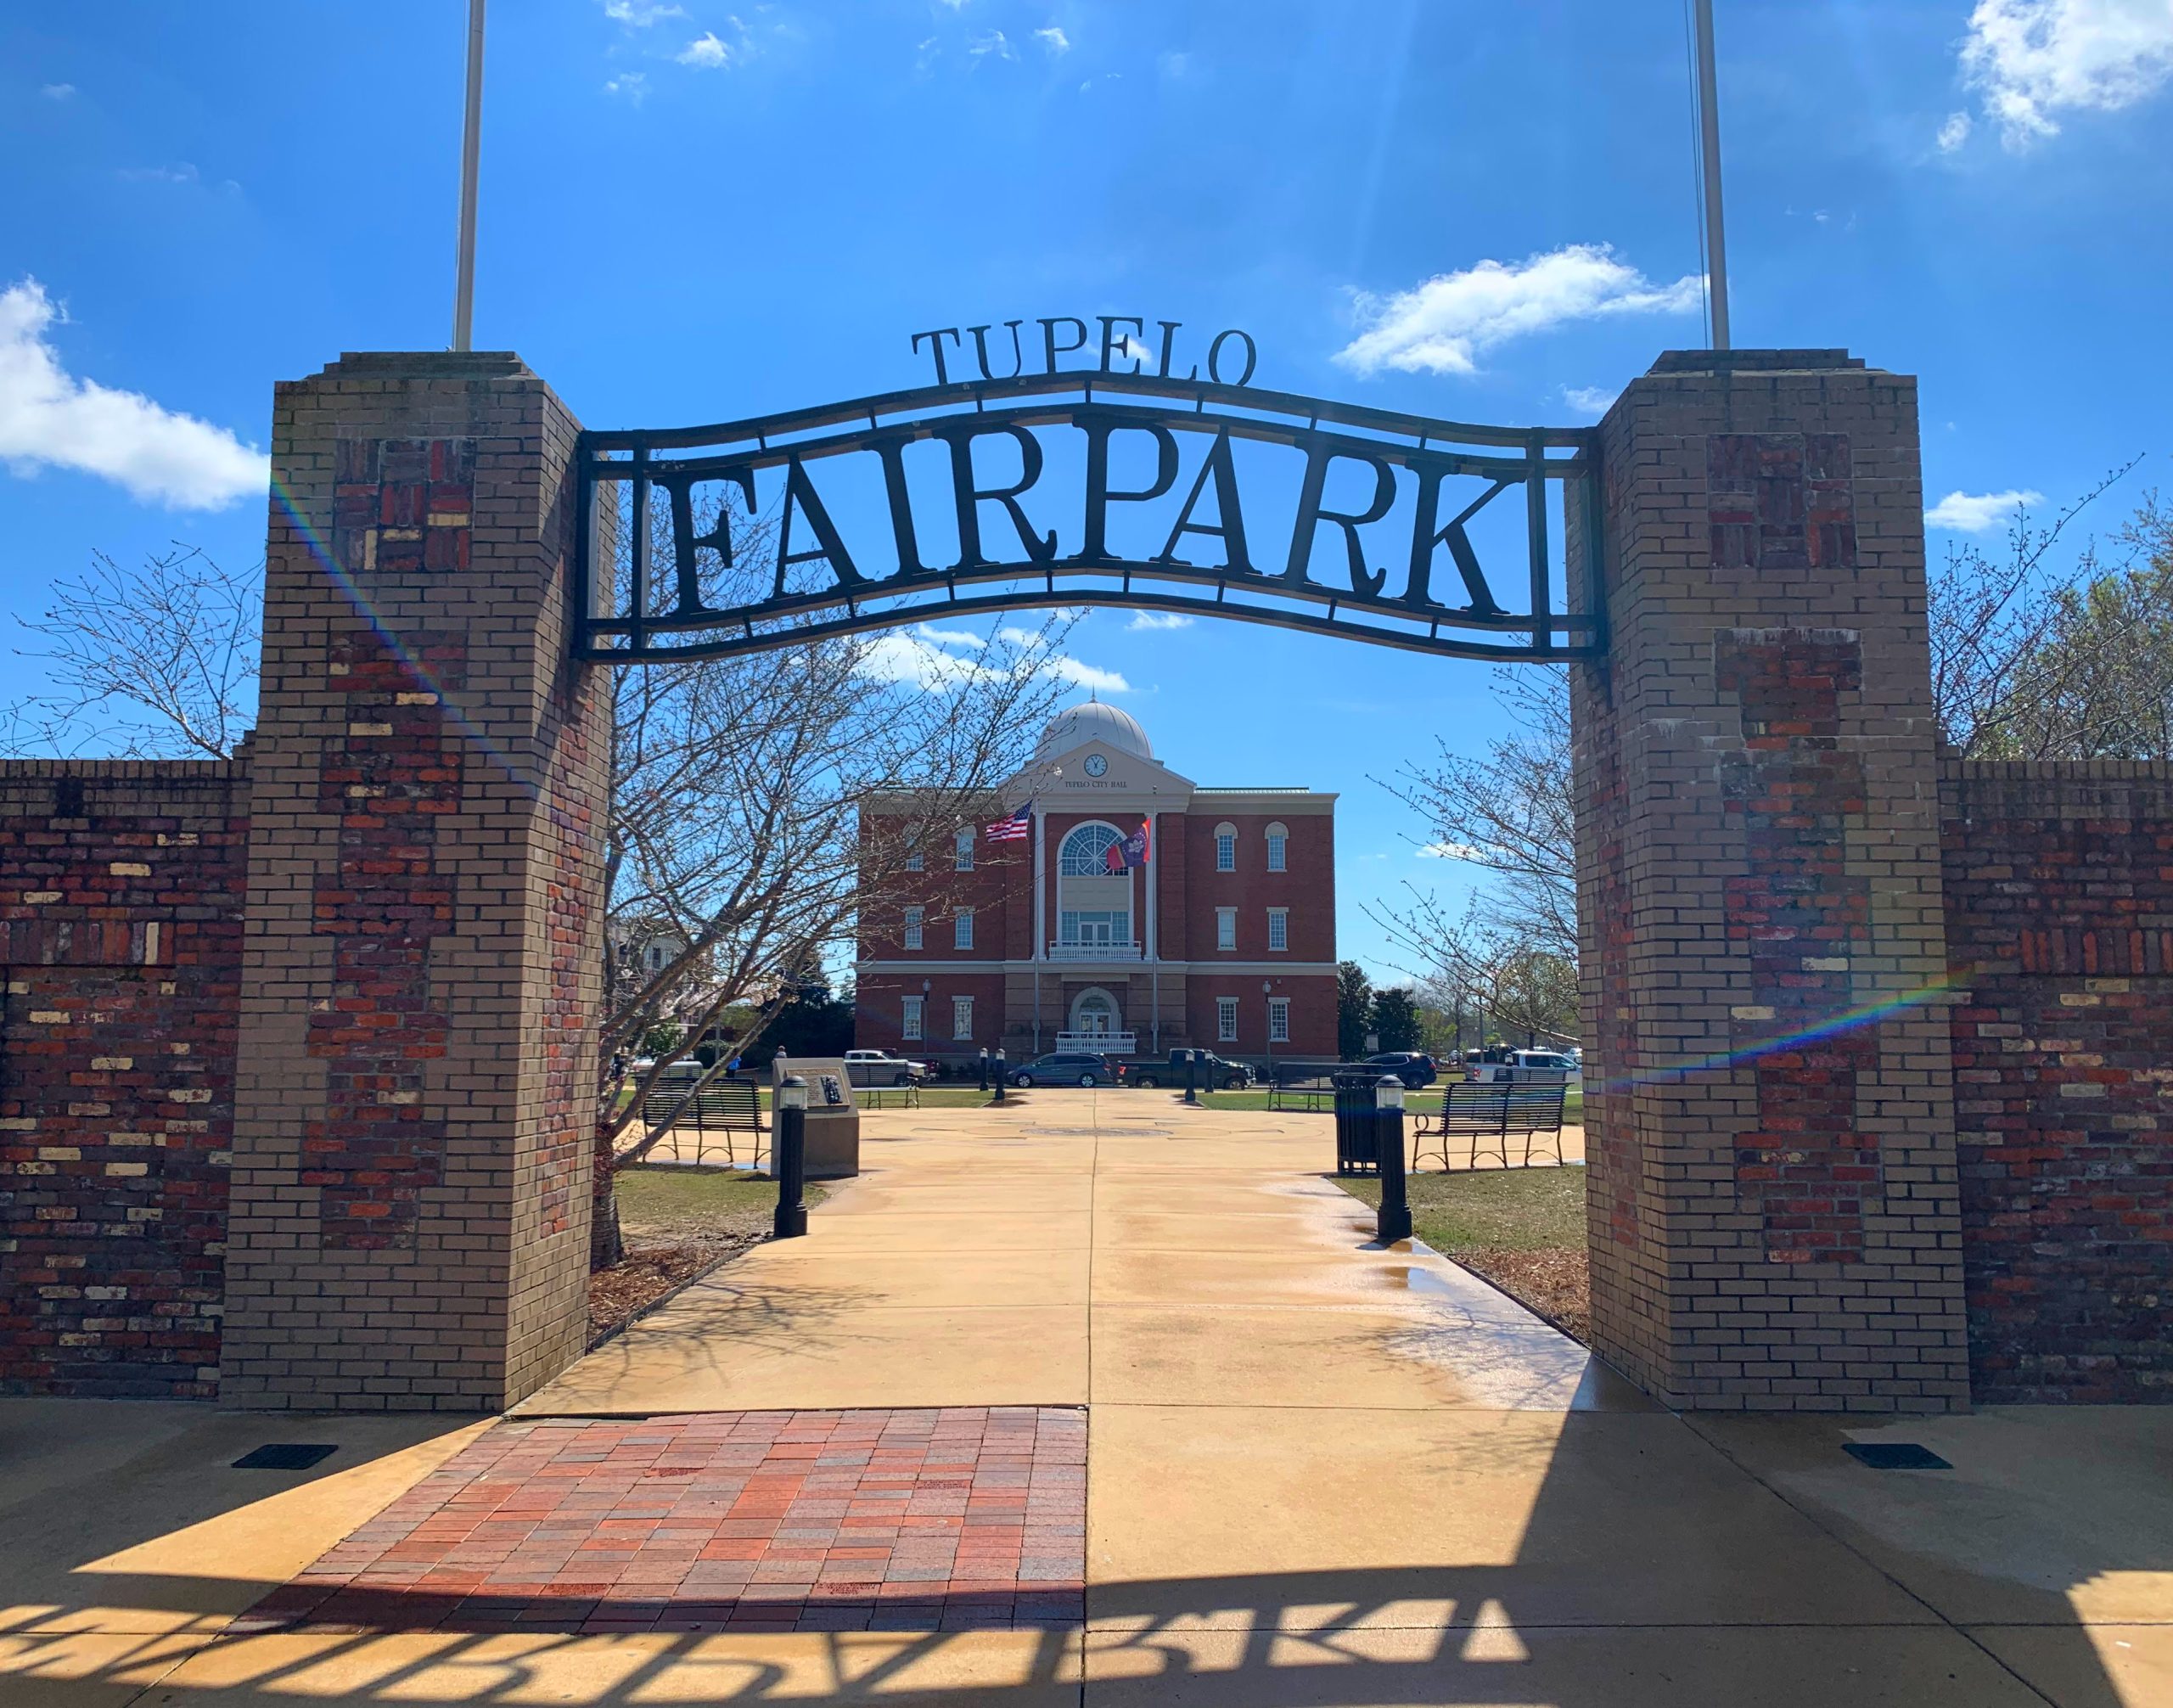 The entrance to Tupelo Fairpark.